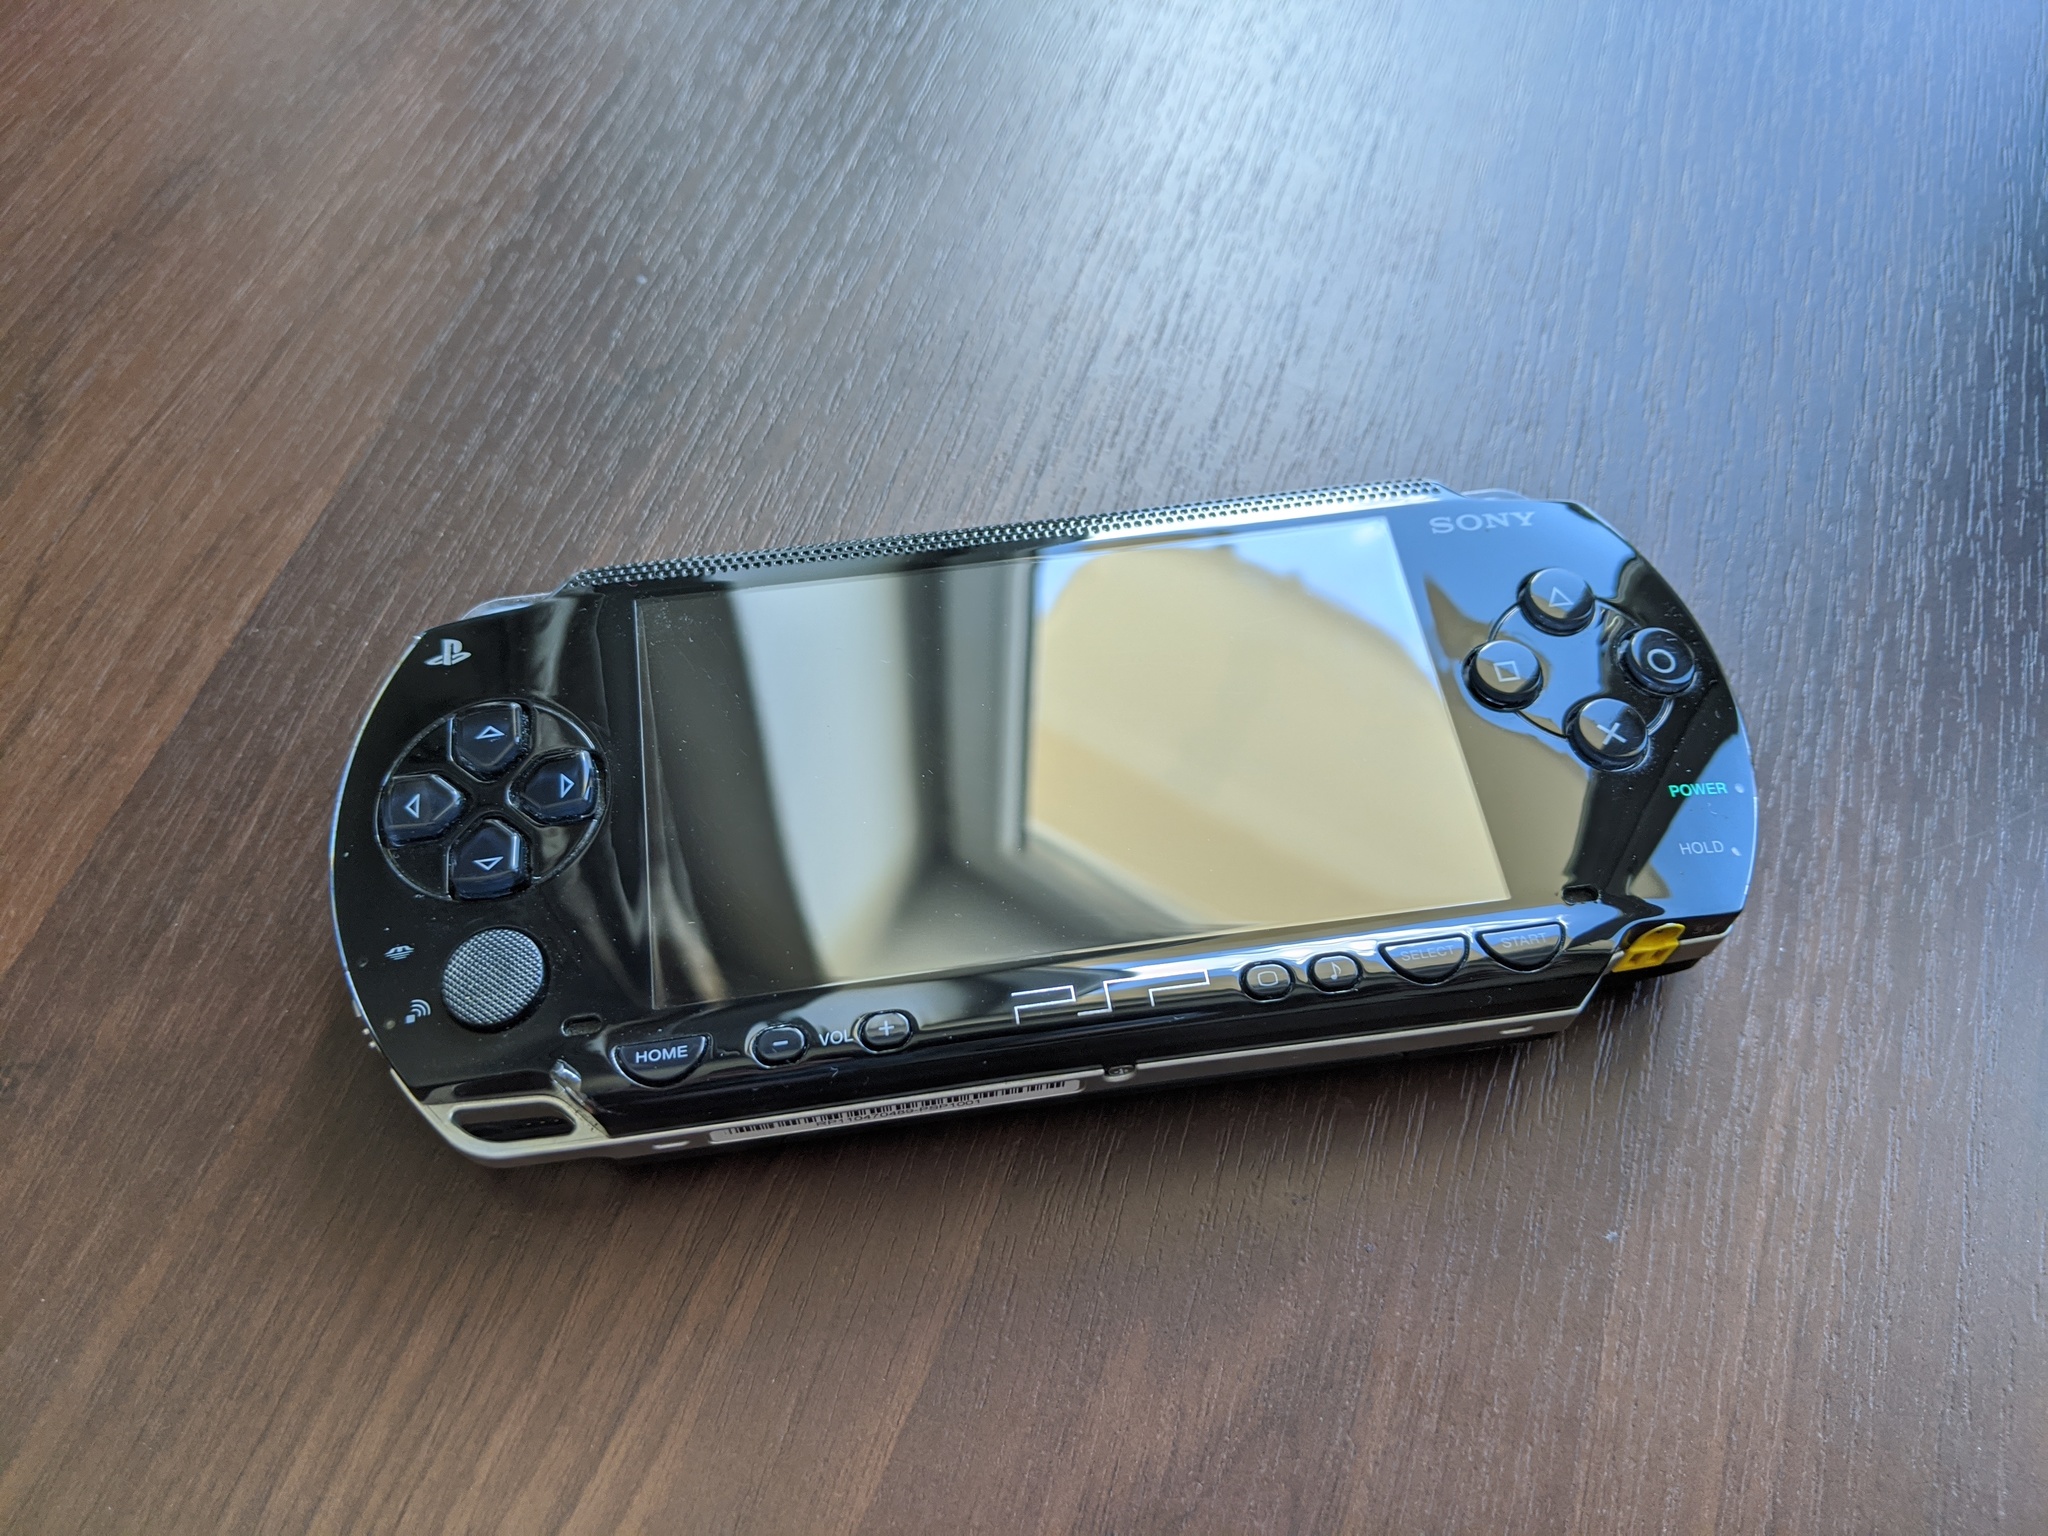 Зыз. Коллекция портативных консолей. PSP коллекция. Коллекция портативок. Очень маленький телефон.